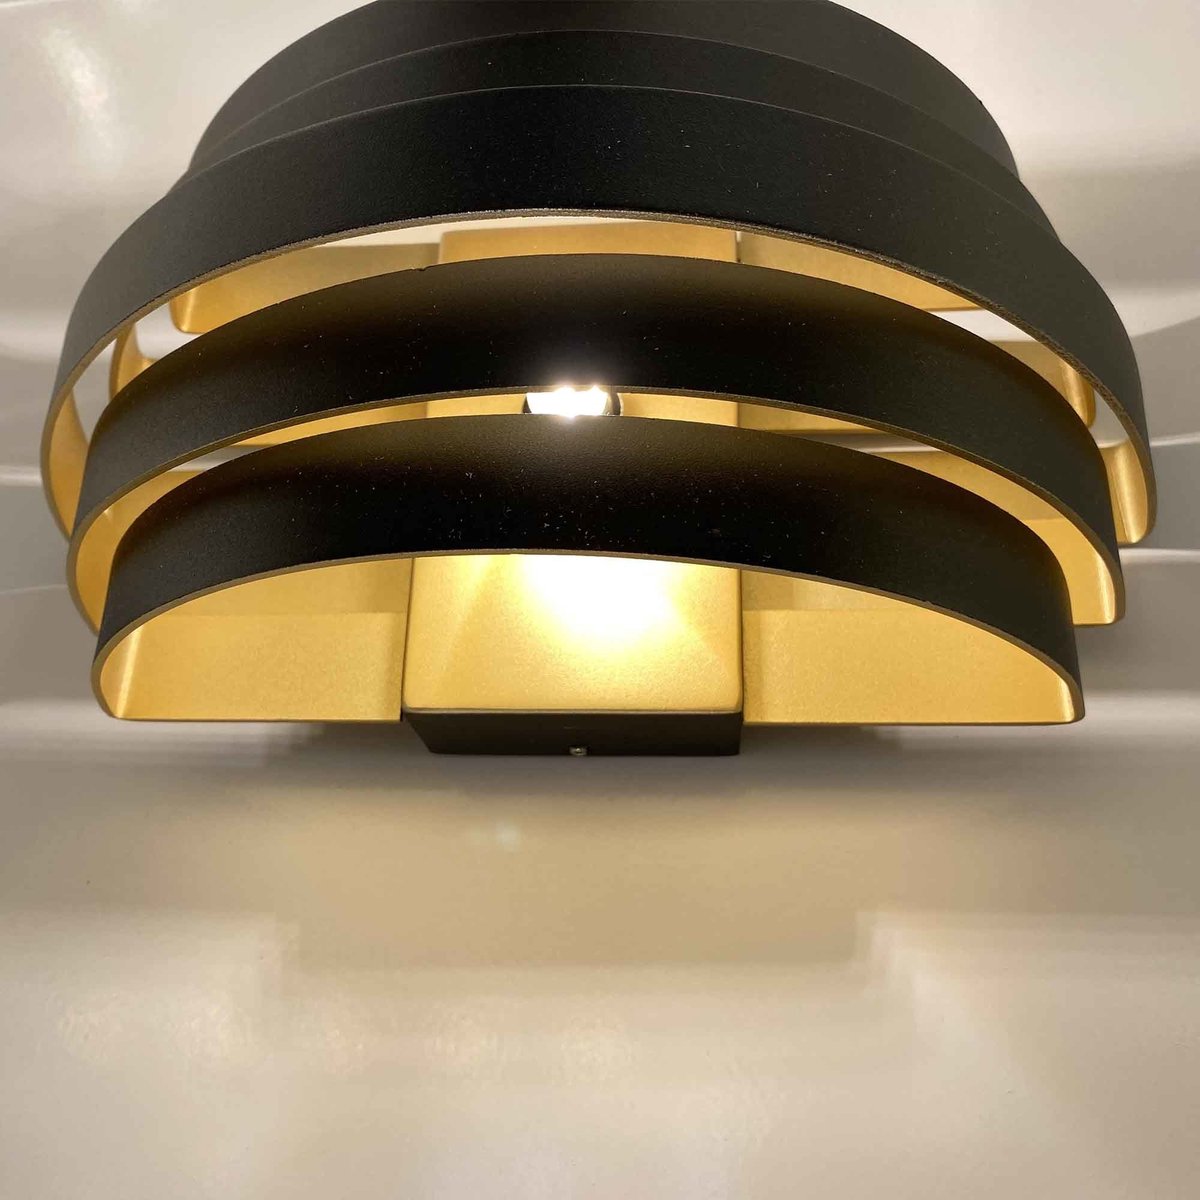 HighLight wandlamp Scudo 20 cm - zwart / goud - Highlight